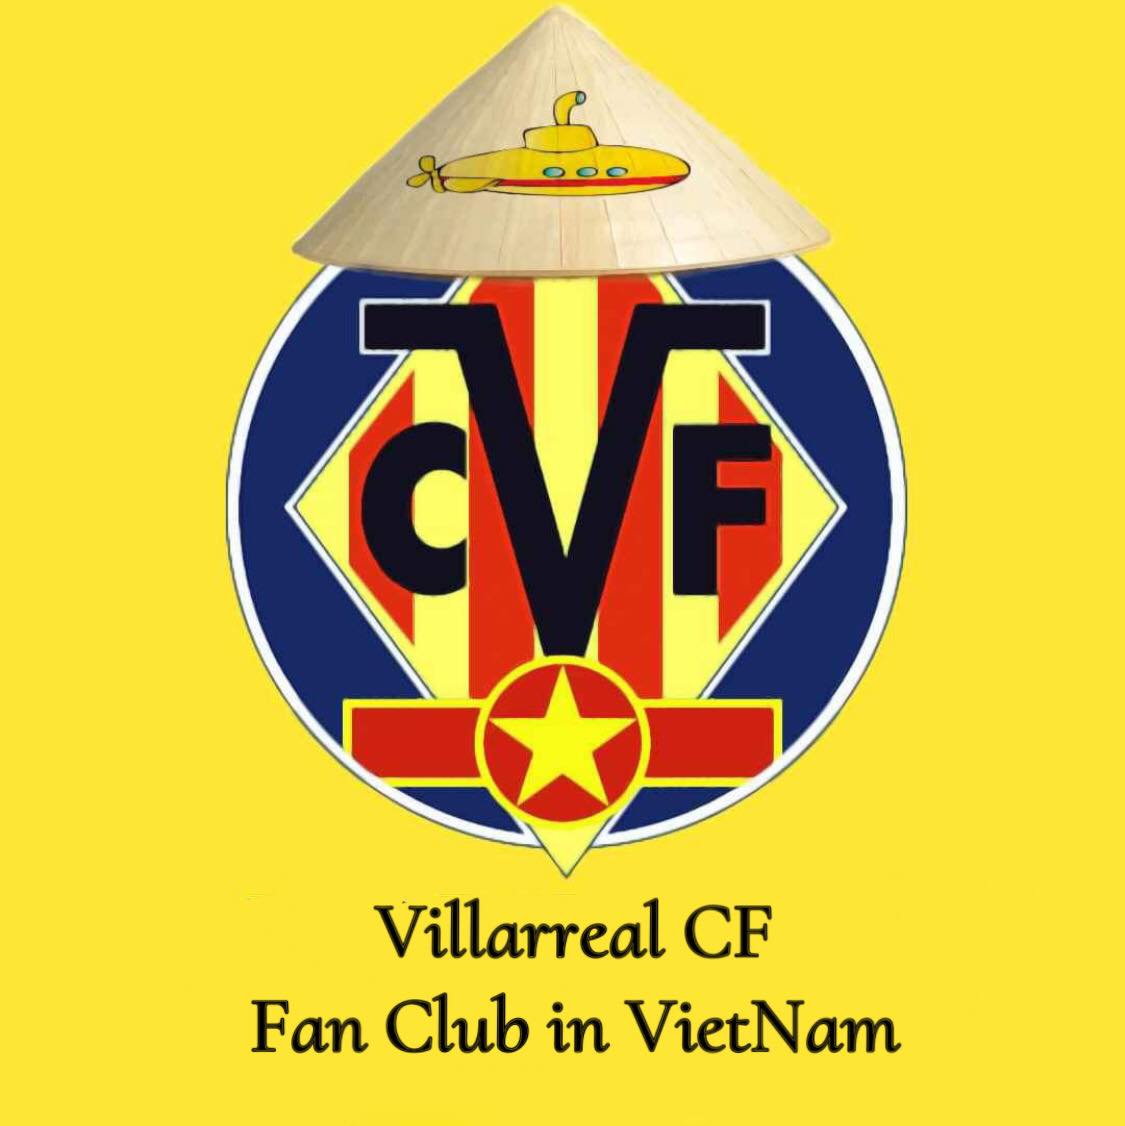 LOGO Villareal CF Fan club in VietNam 1